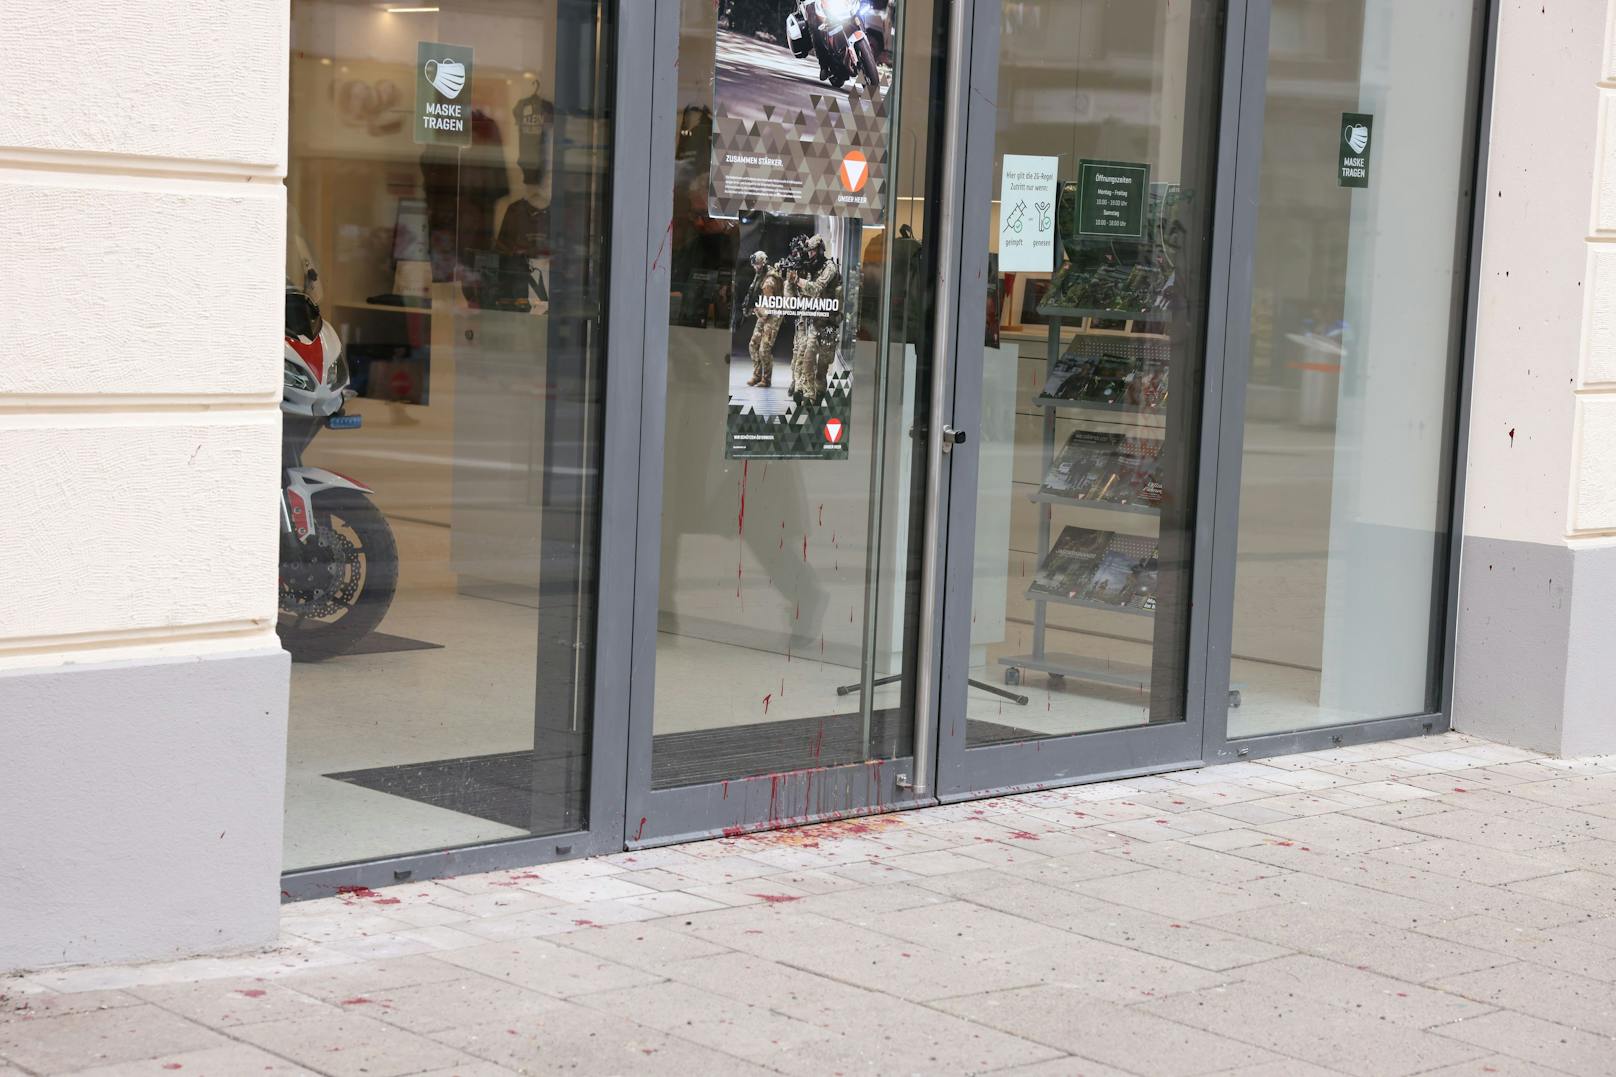 Farb-Anschlag auf den Bundesheer-Shop: Unbekannte machten sich am Geschäft in der Mariahilfer Straße zu schaffen.